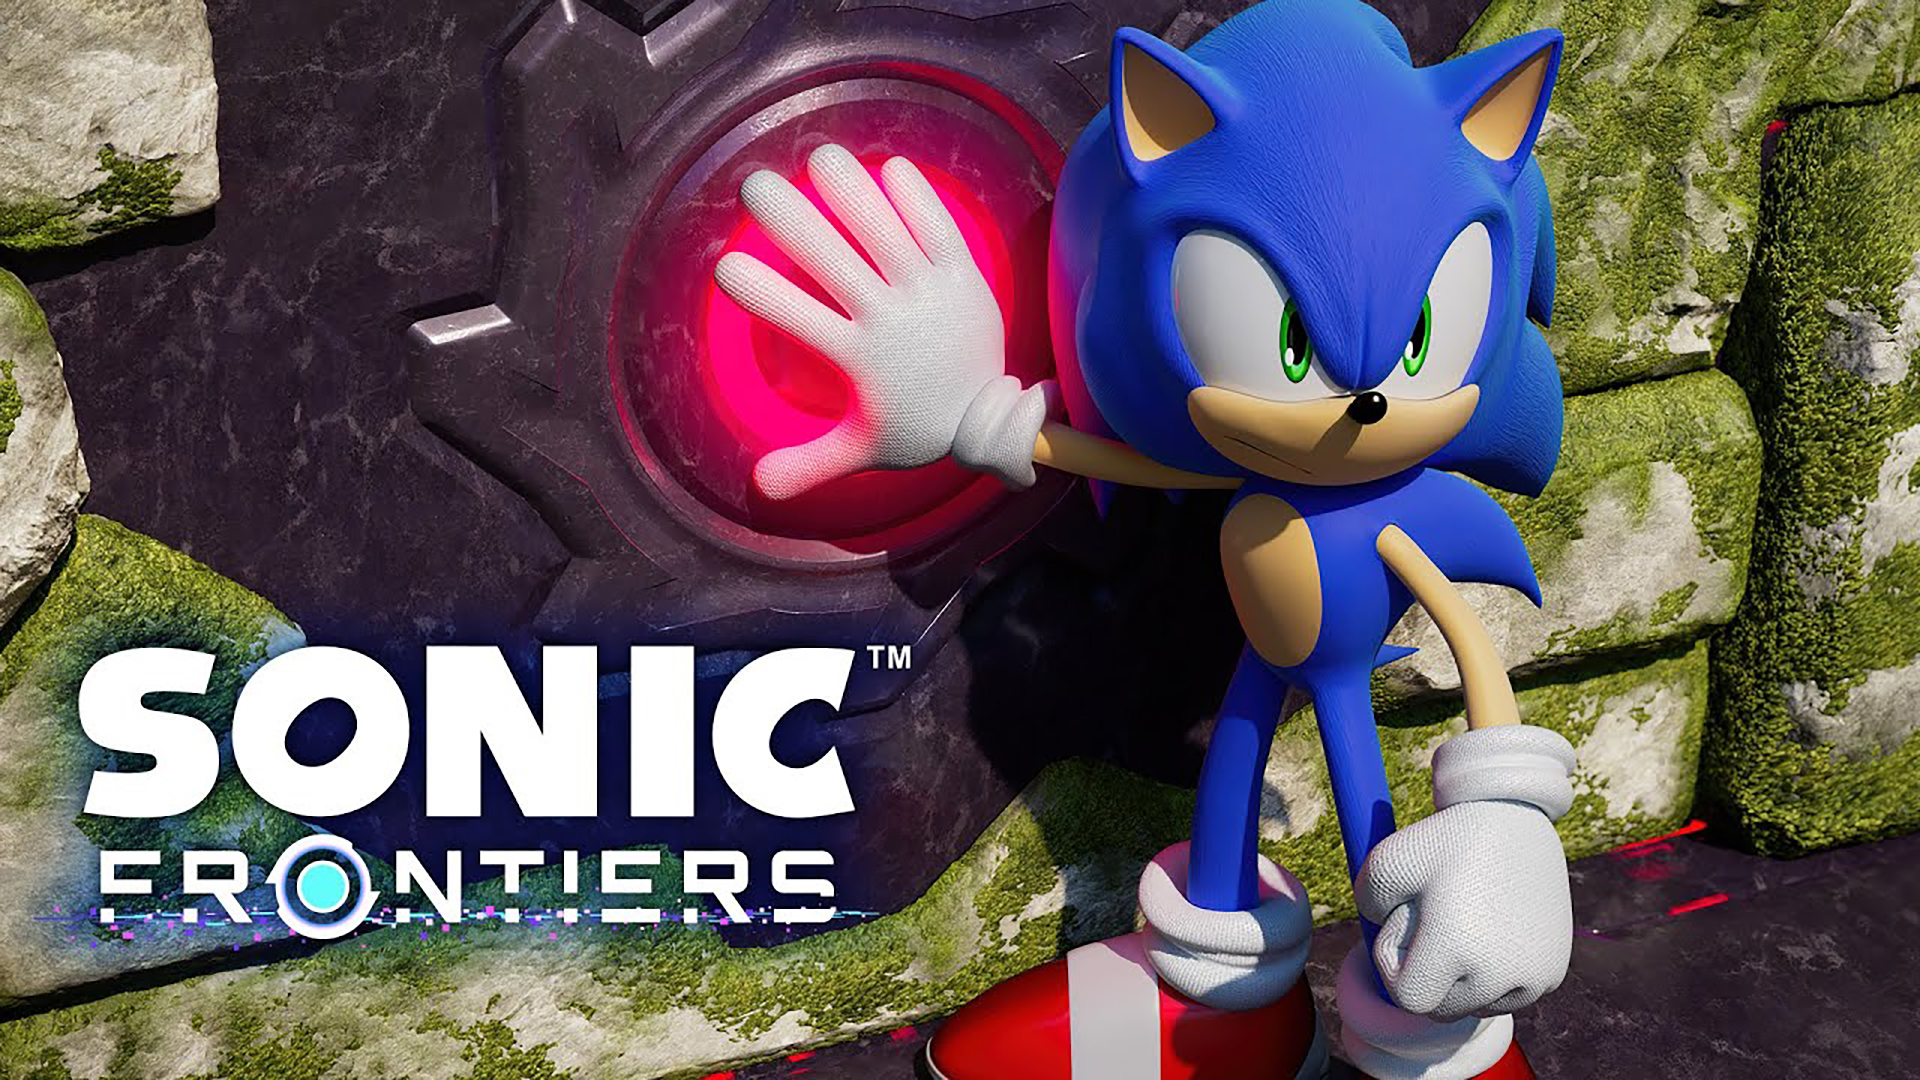 Sonic Frontiers ประกาศวันวางจำหน่าย พร้อมปล่อยตัวอย่างเนื้อเรื่อง